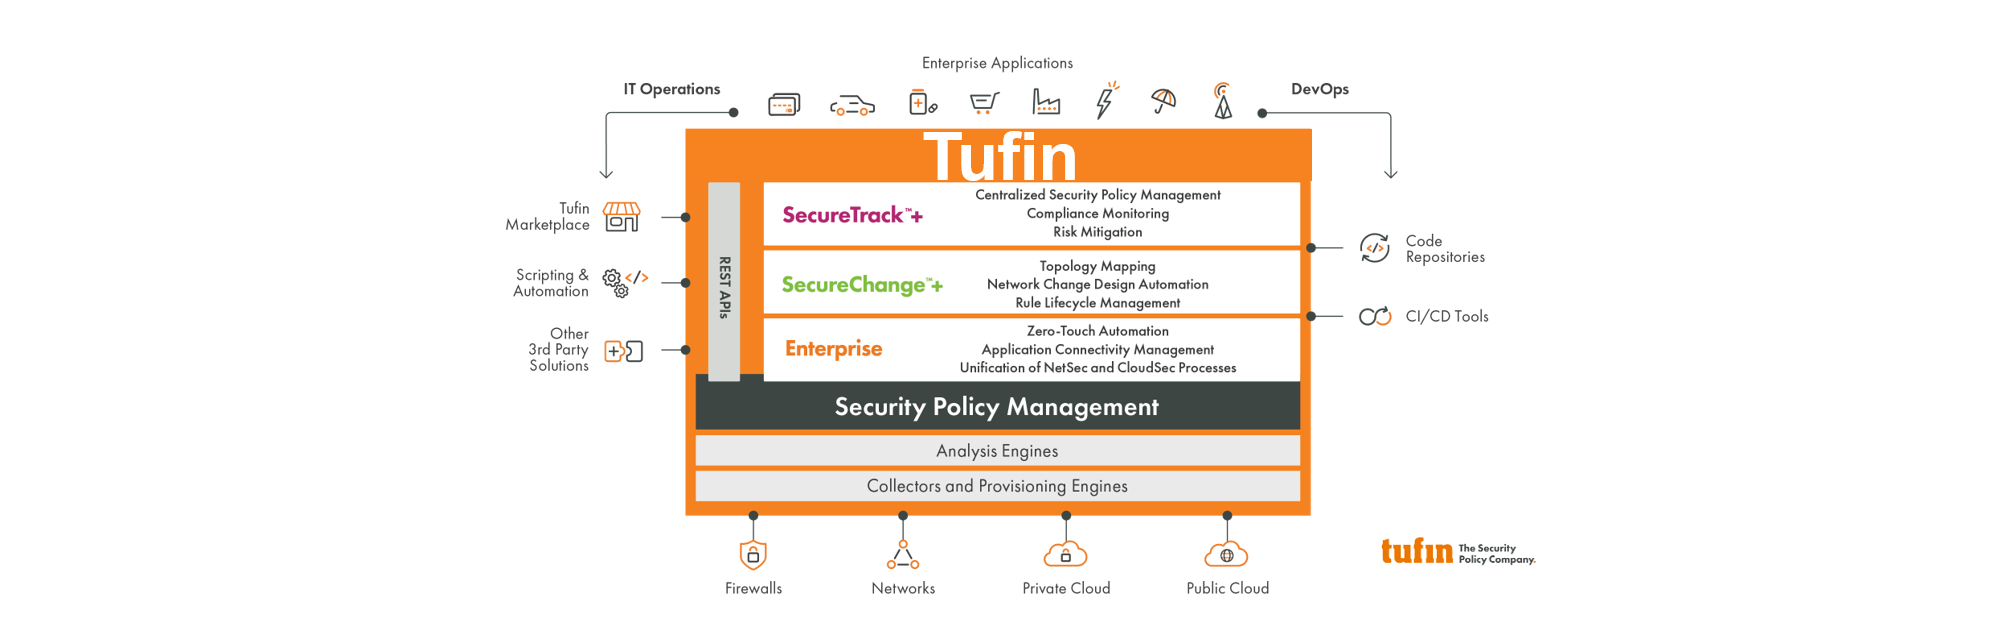 tufin 資安設備安全政策管理